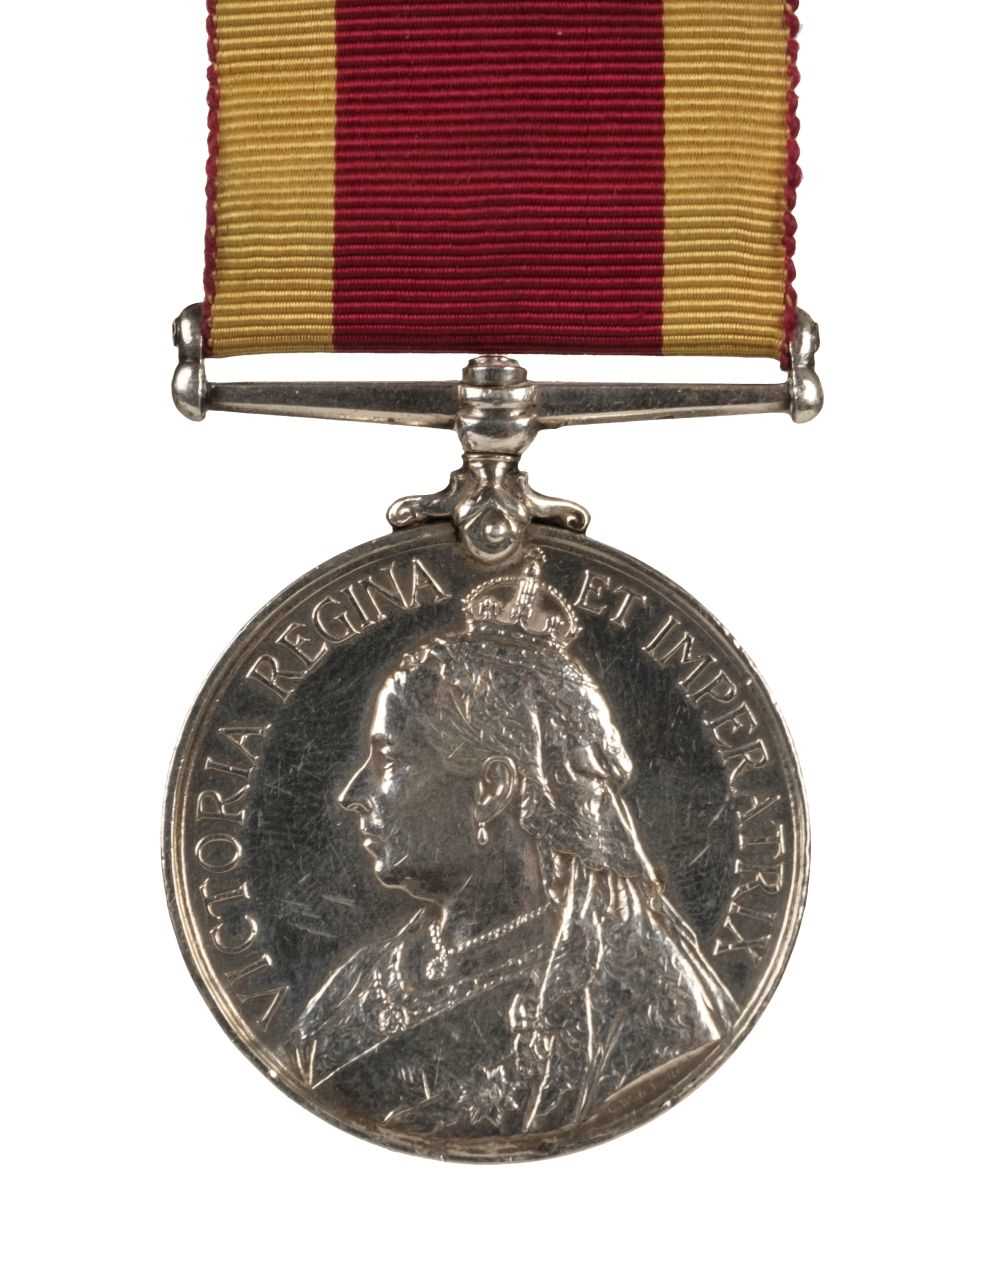 Lot 39 - China 1900 medal - Able Seaman A.H. Rawle, Royal Navy